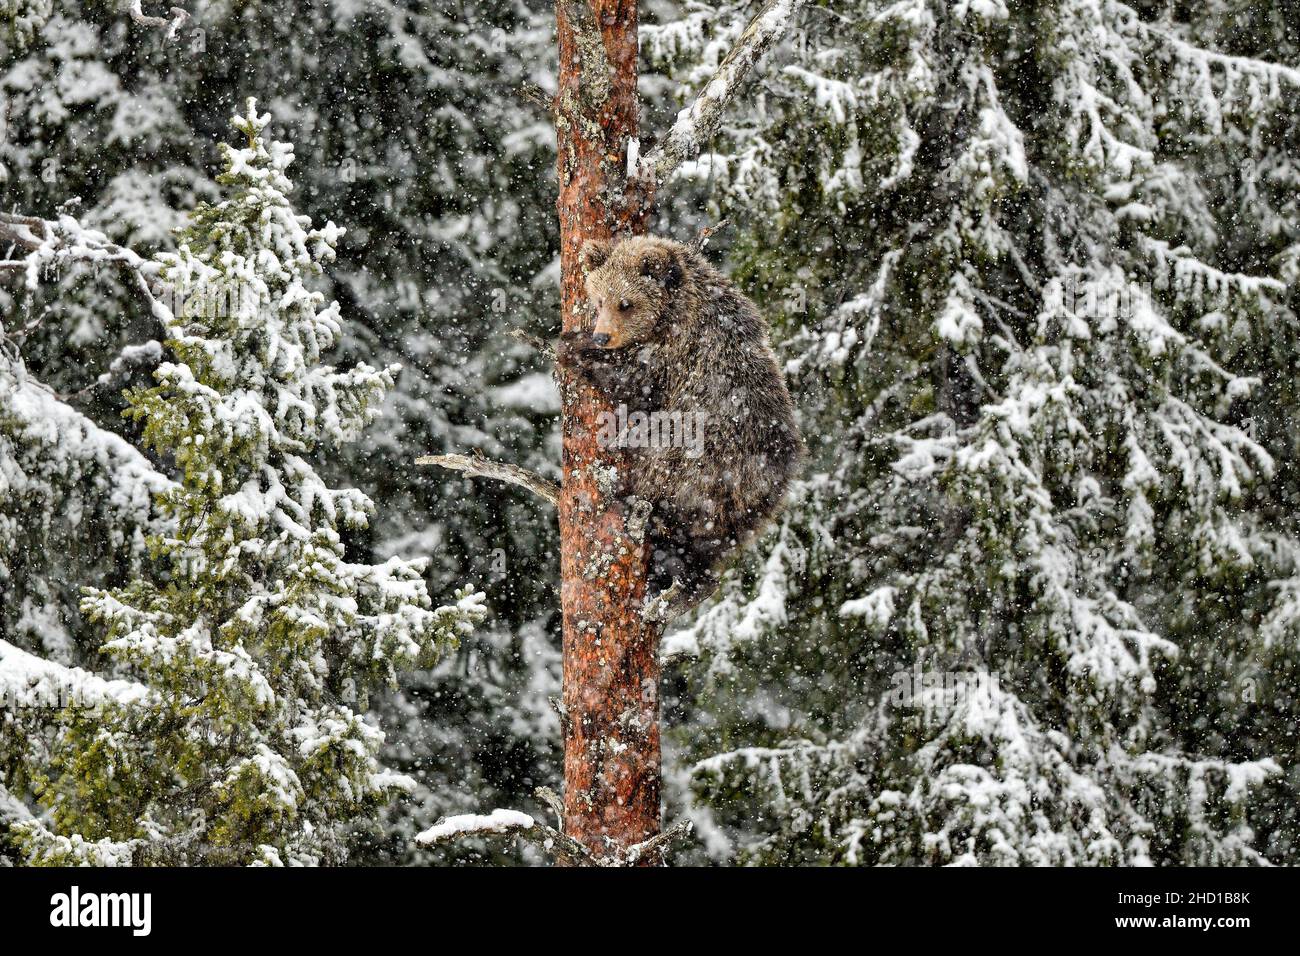 Un jeune ours grimpe sur le pin dans une tempête de neige Banque D'Images